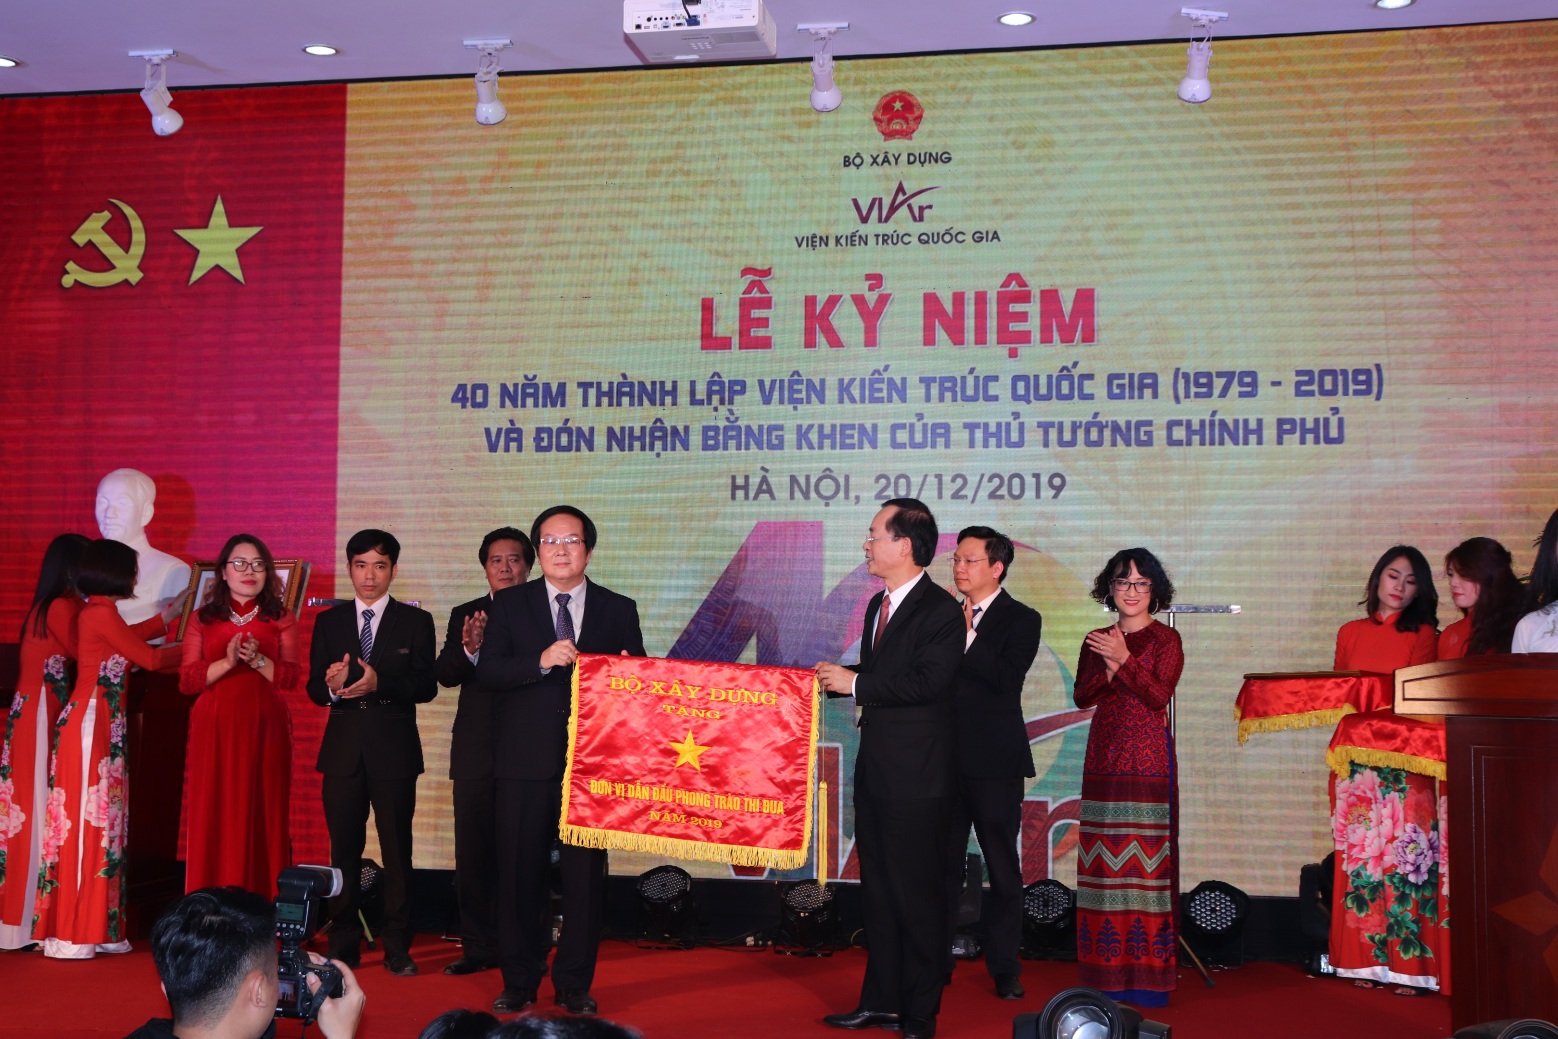 Bộ trưởng Phạm Hồng Hà tặng cờ thi đua của Bộ Xây dựng cho Viện Kiến trúc Quốc gia